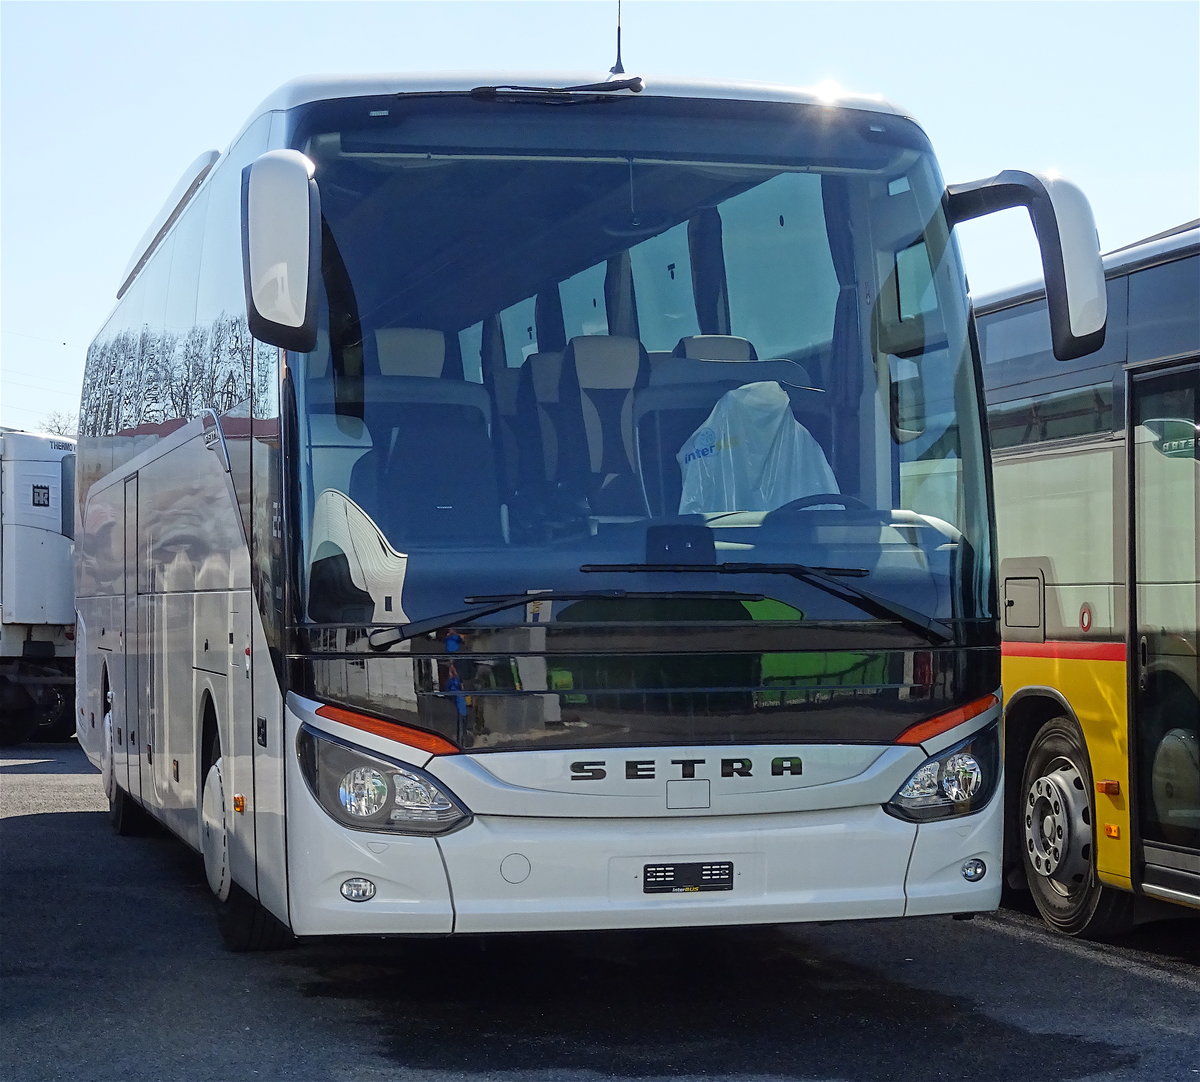 Setra 515 HD Interbus Kerzers, mars 2016

Plus de photos sur : https://www.facebook.com/AutocarsenSuisse/